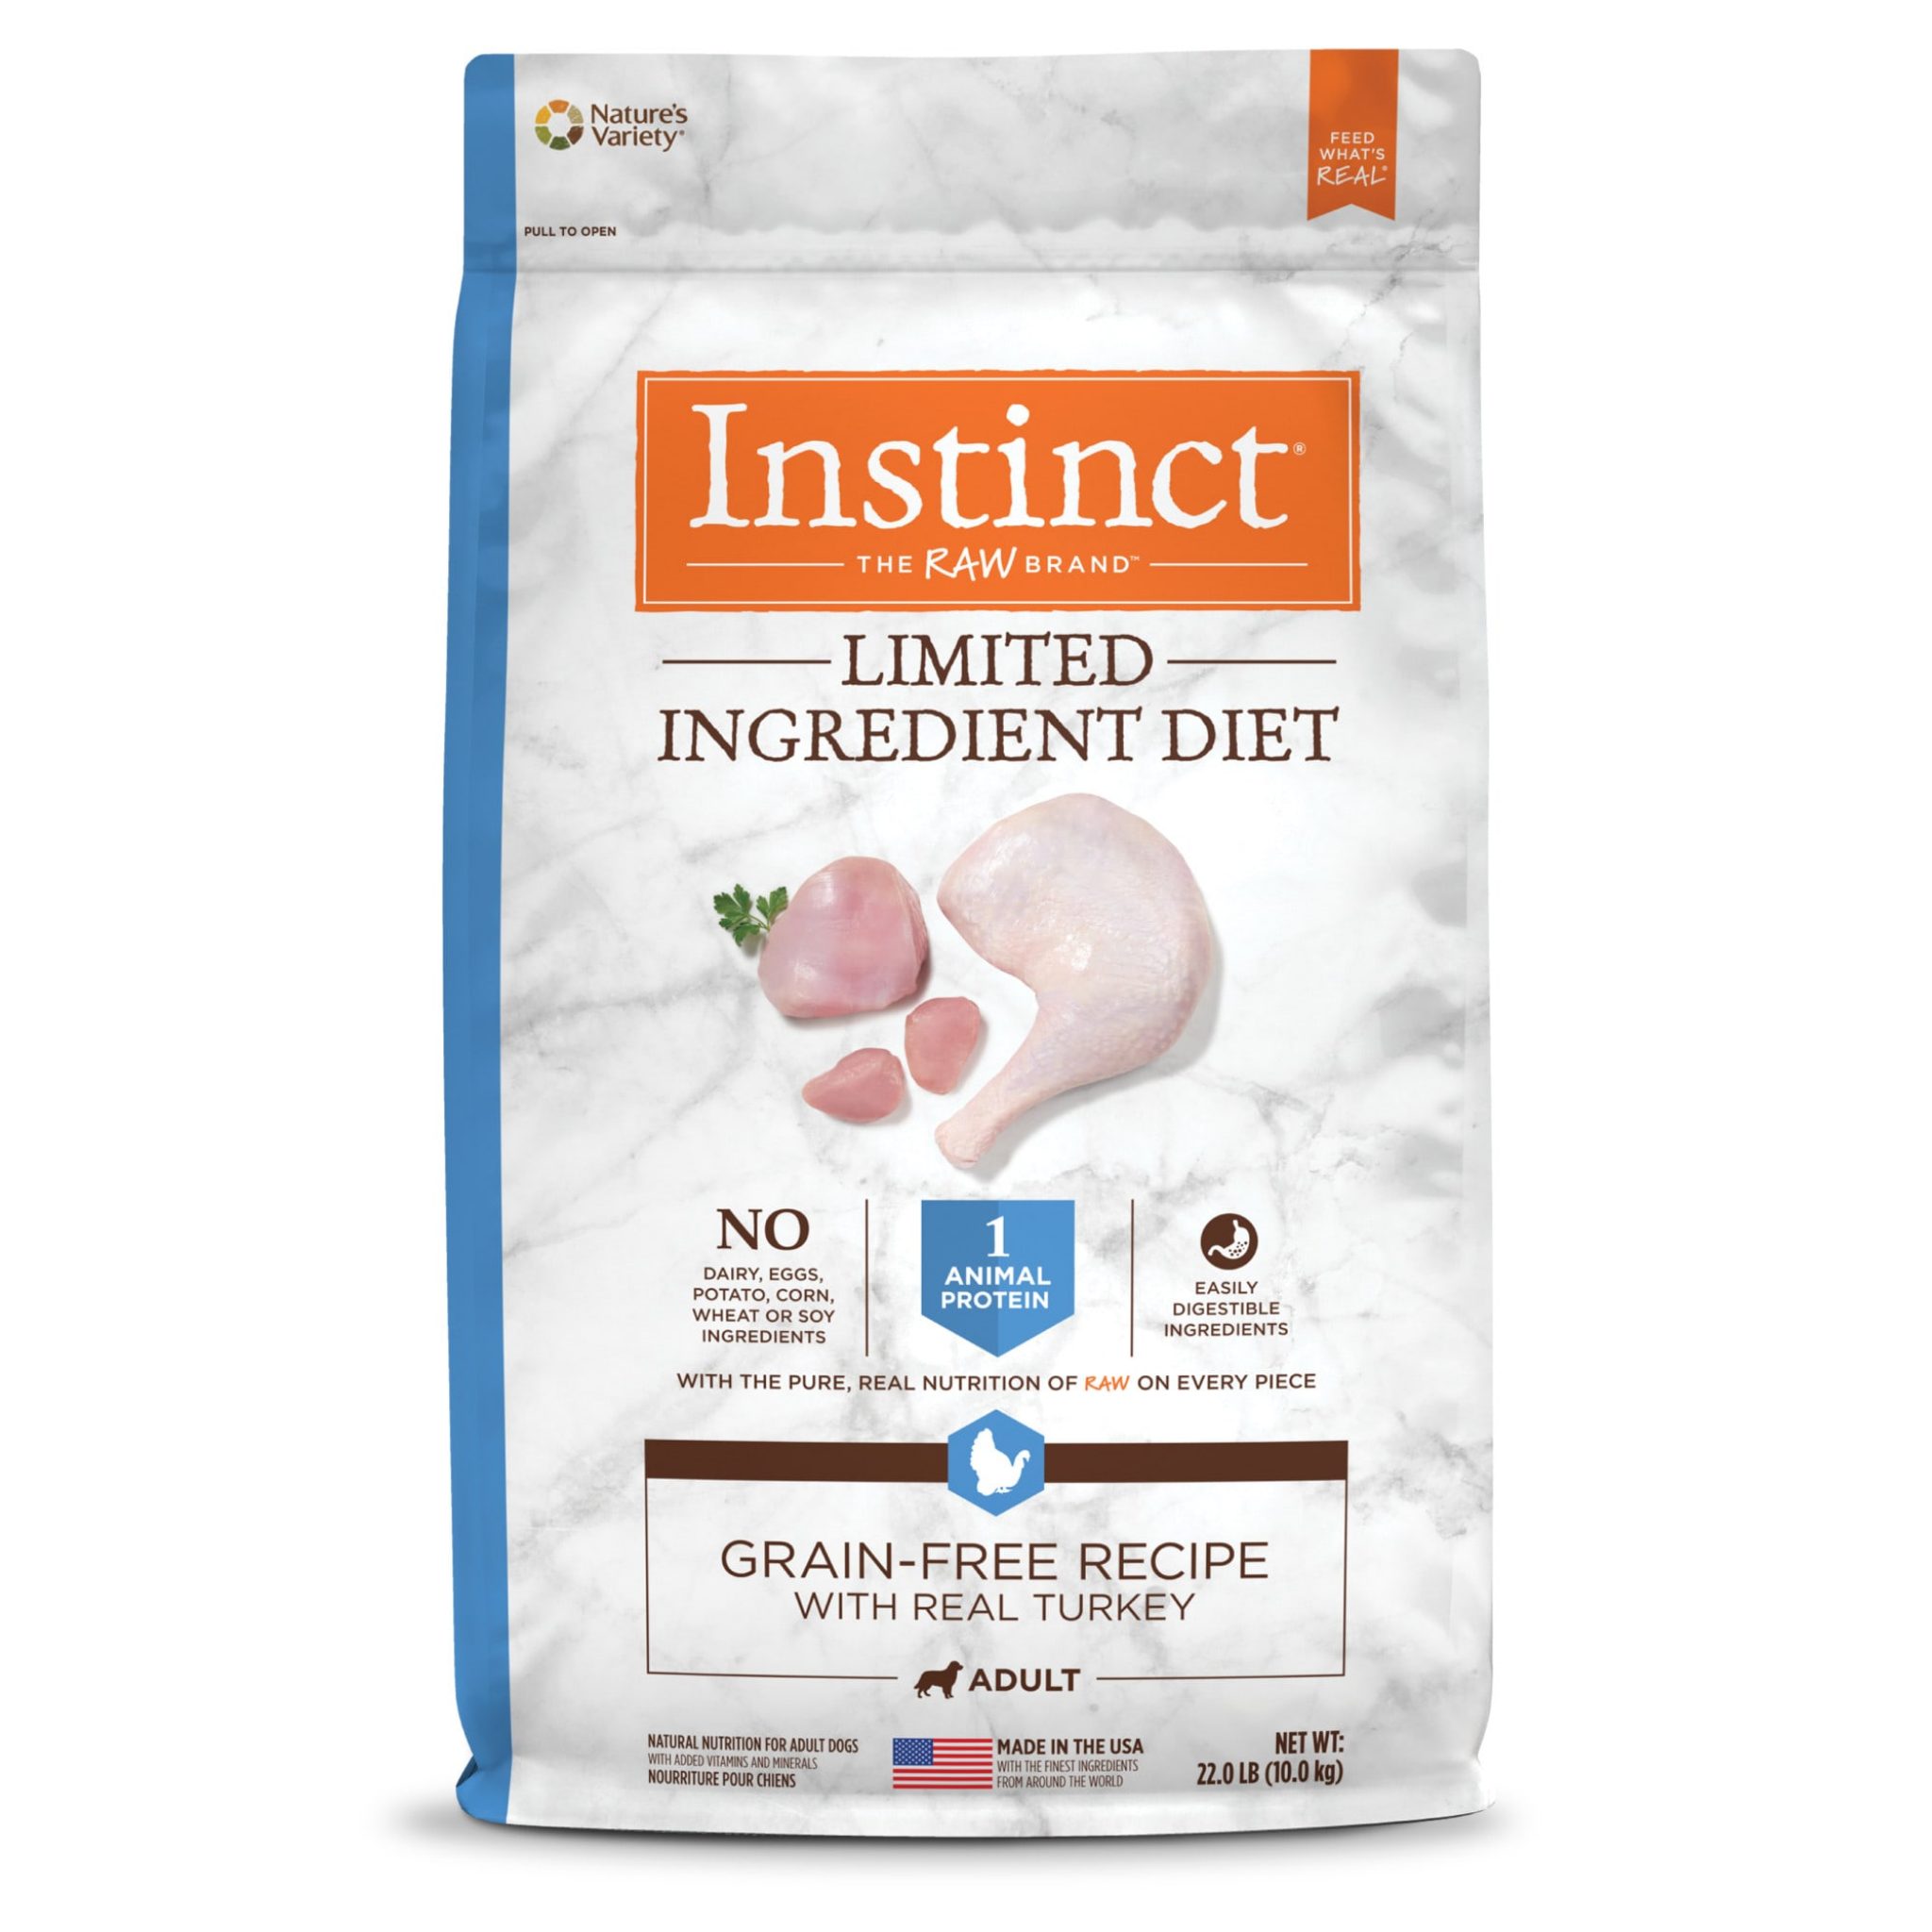 Instinct Limited Ingredient Diet GrainFree Recipe with Real Turkey